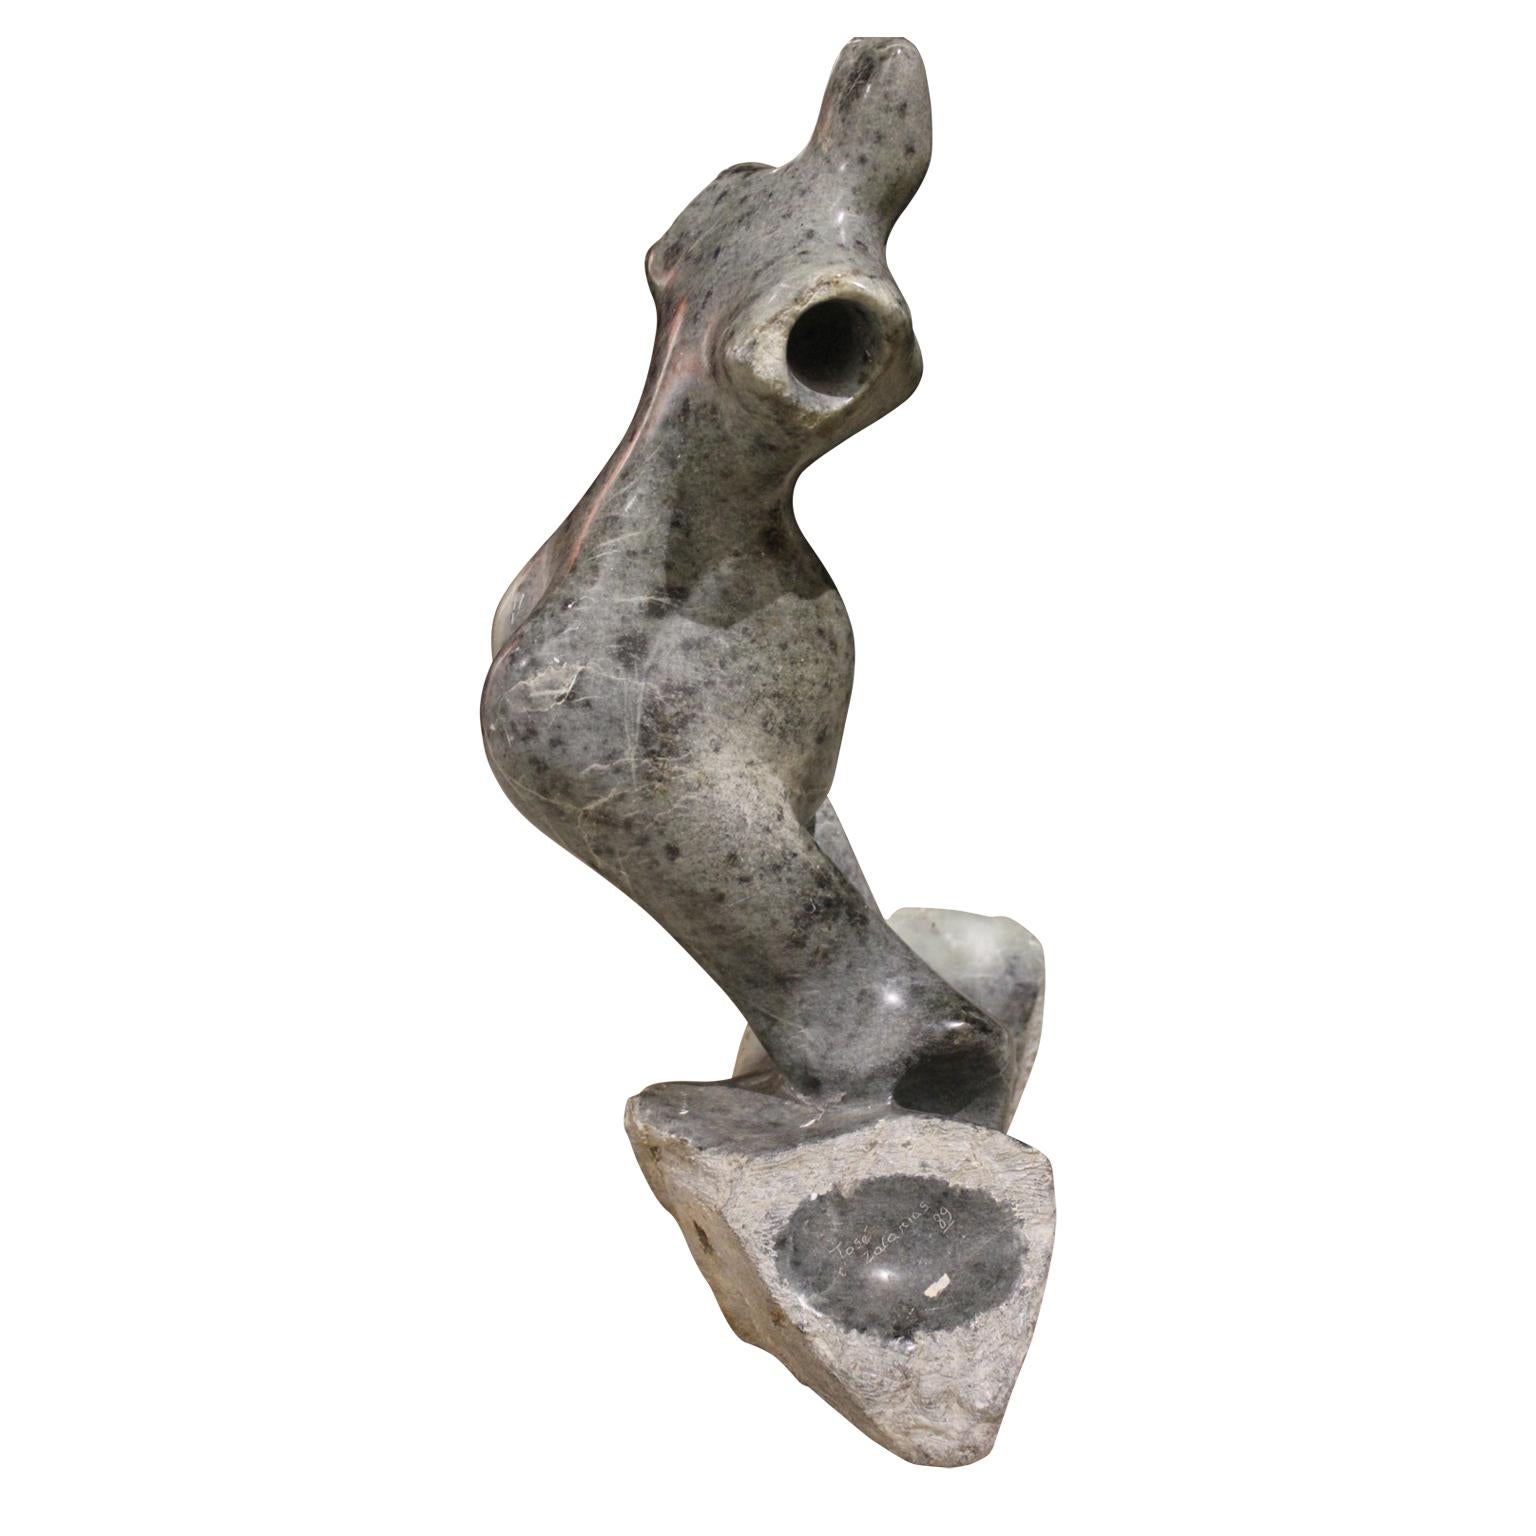 Figurative graue Steinskulptur einer weiblichen Figur (Grau), Nude Sculpture, von Jose Zacarias